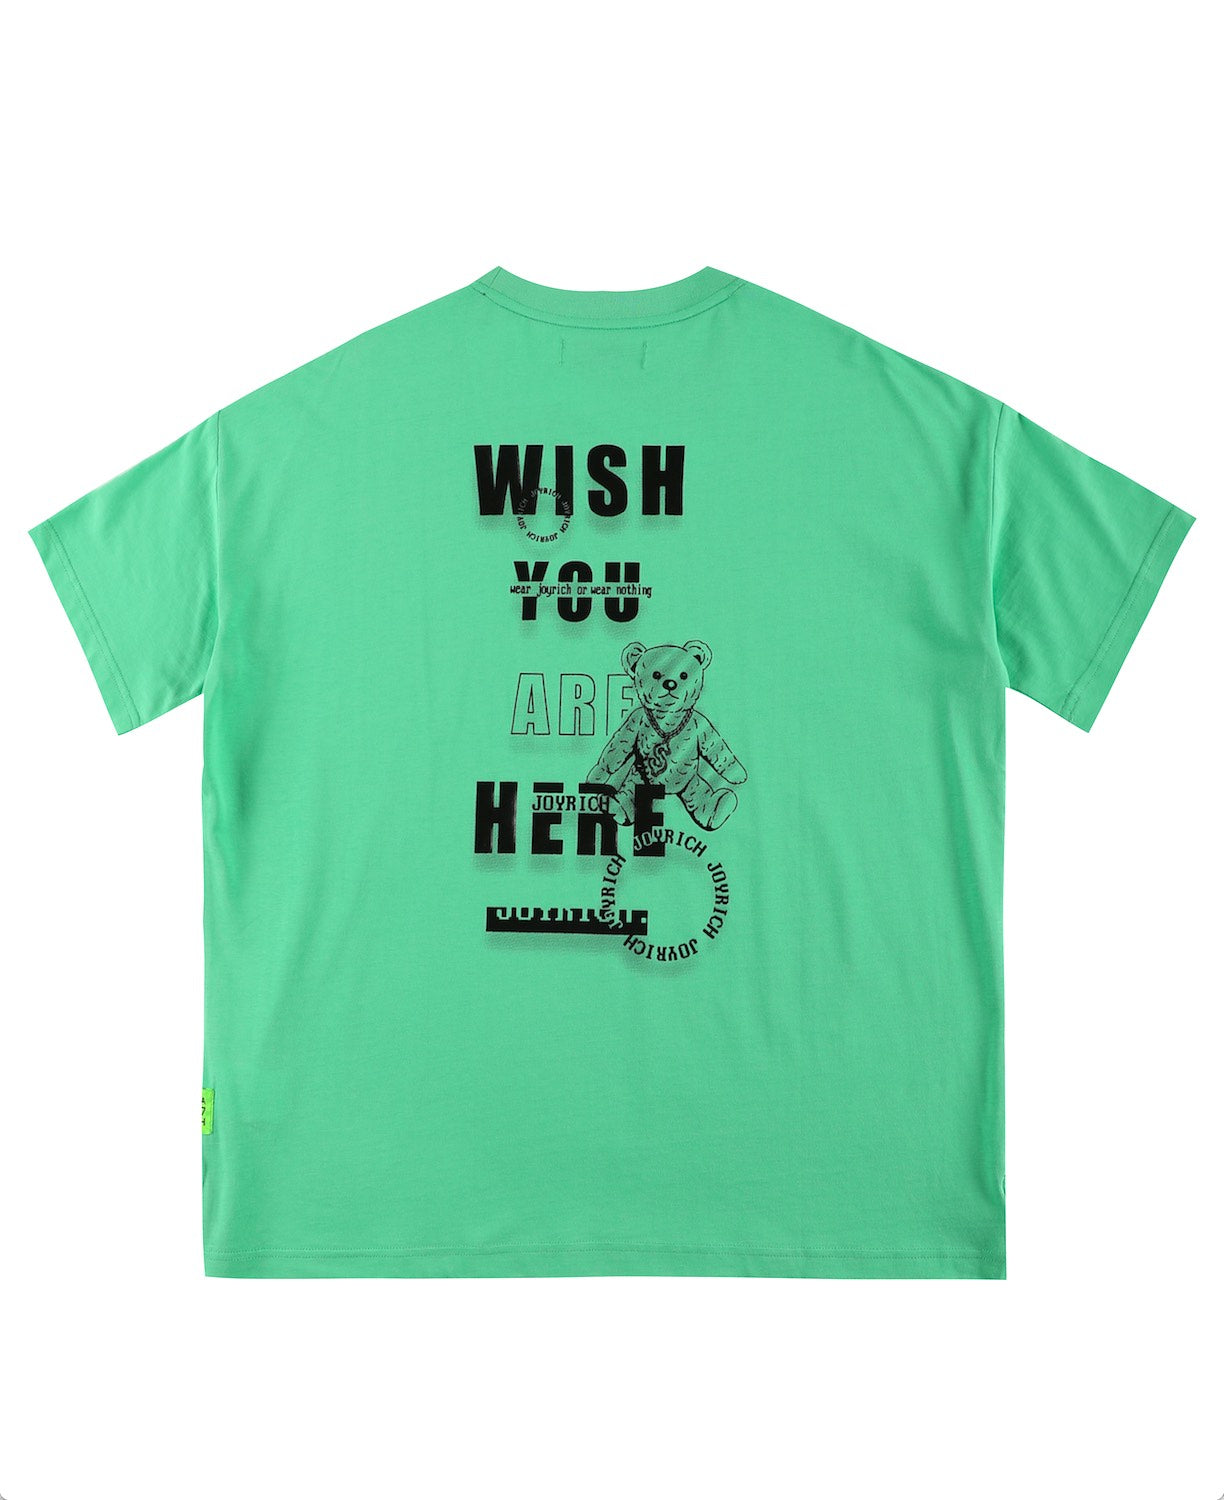 EC Wish You T-Shirts / Green